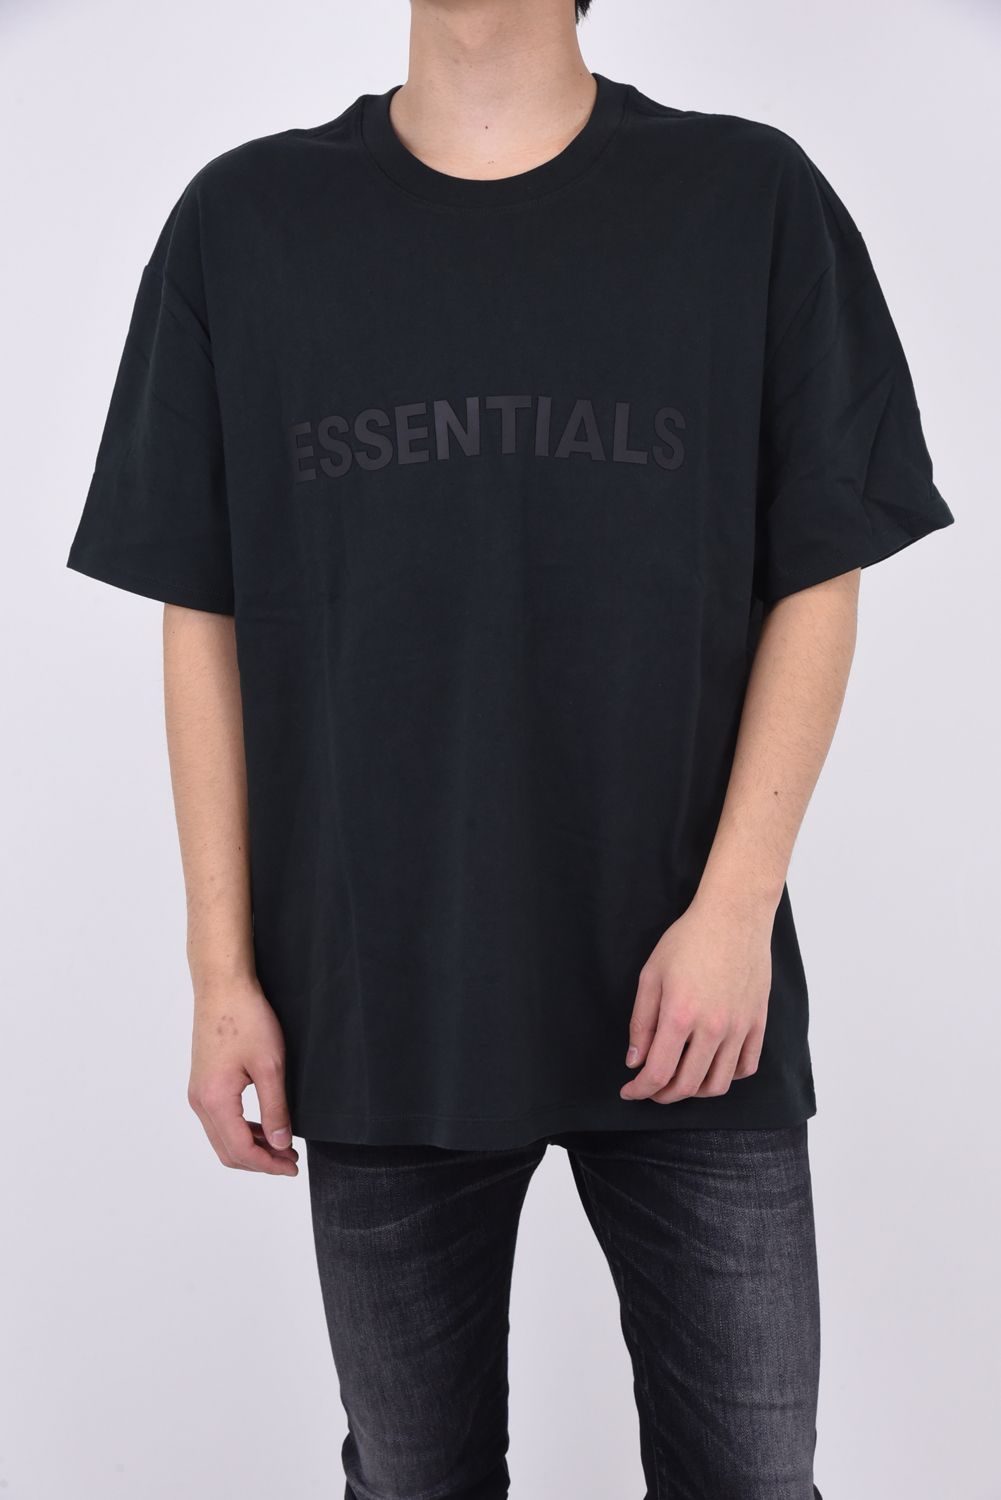 新作FOG Essentials フロントロゴ  Tシャツ CORAL  M